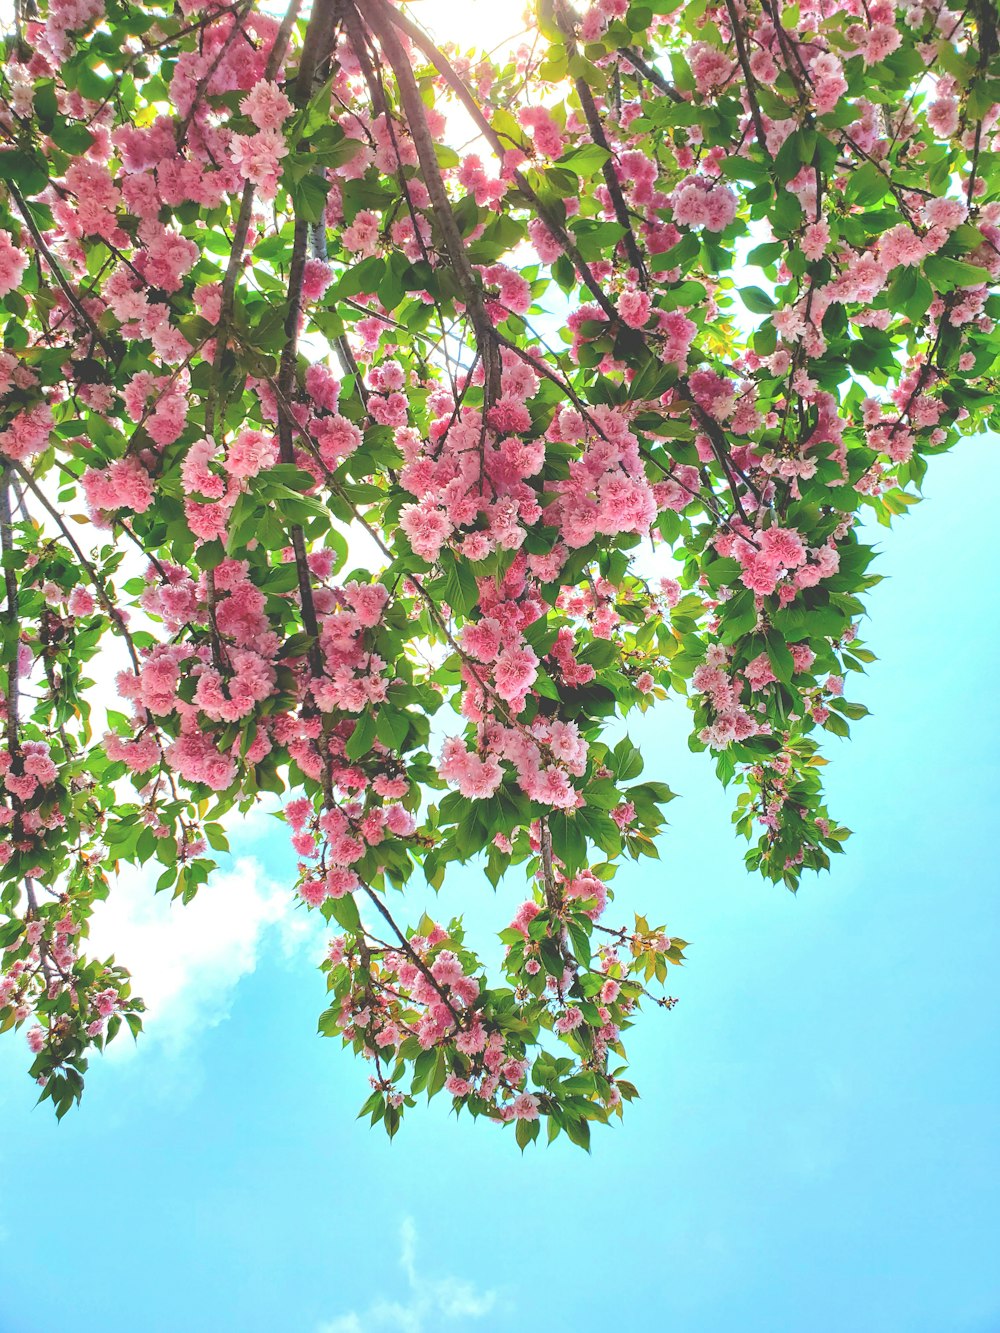 Las flores rosadas florecen en las ramas de un árbol